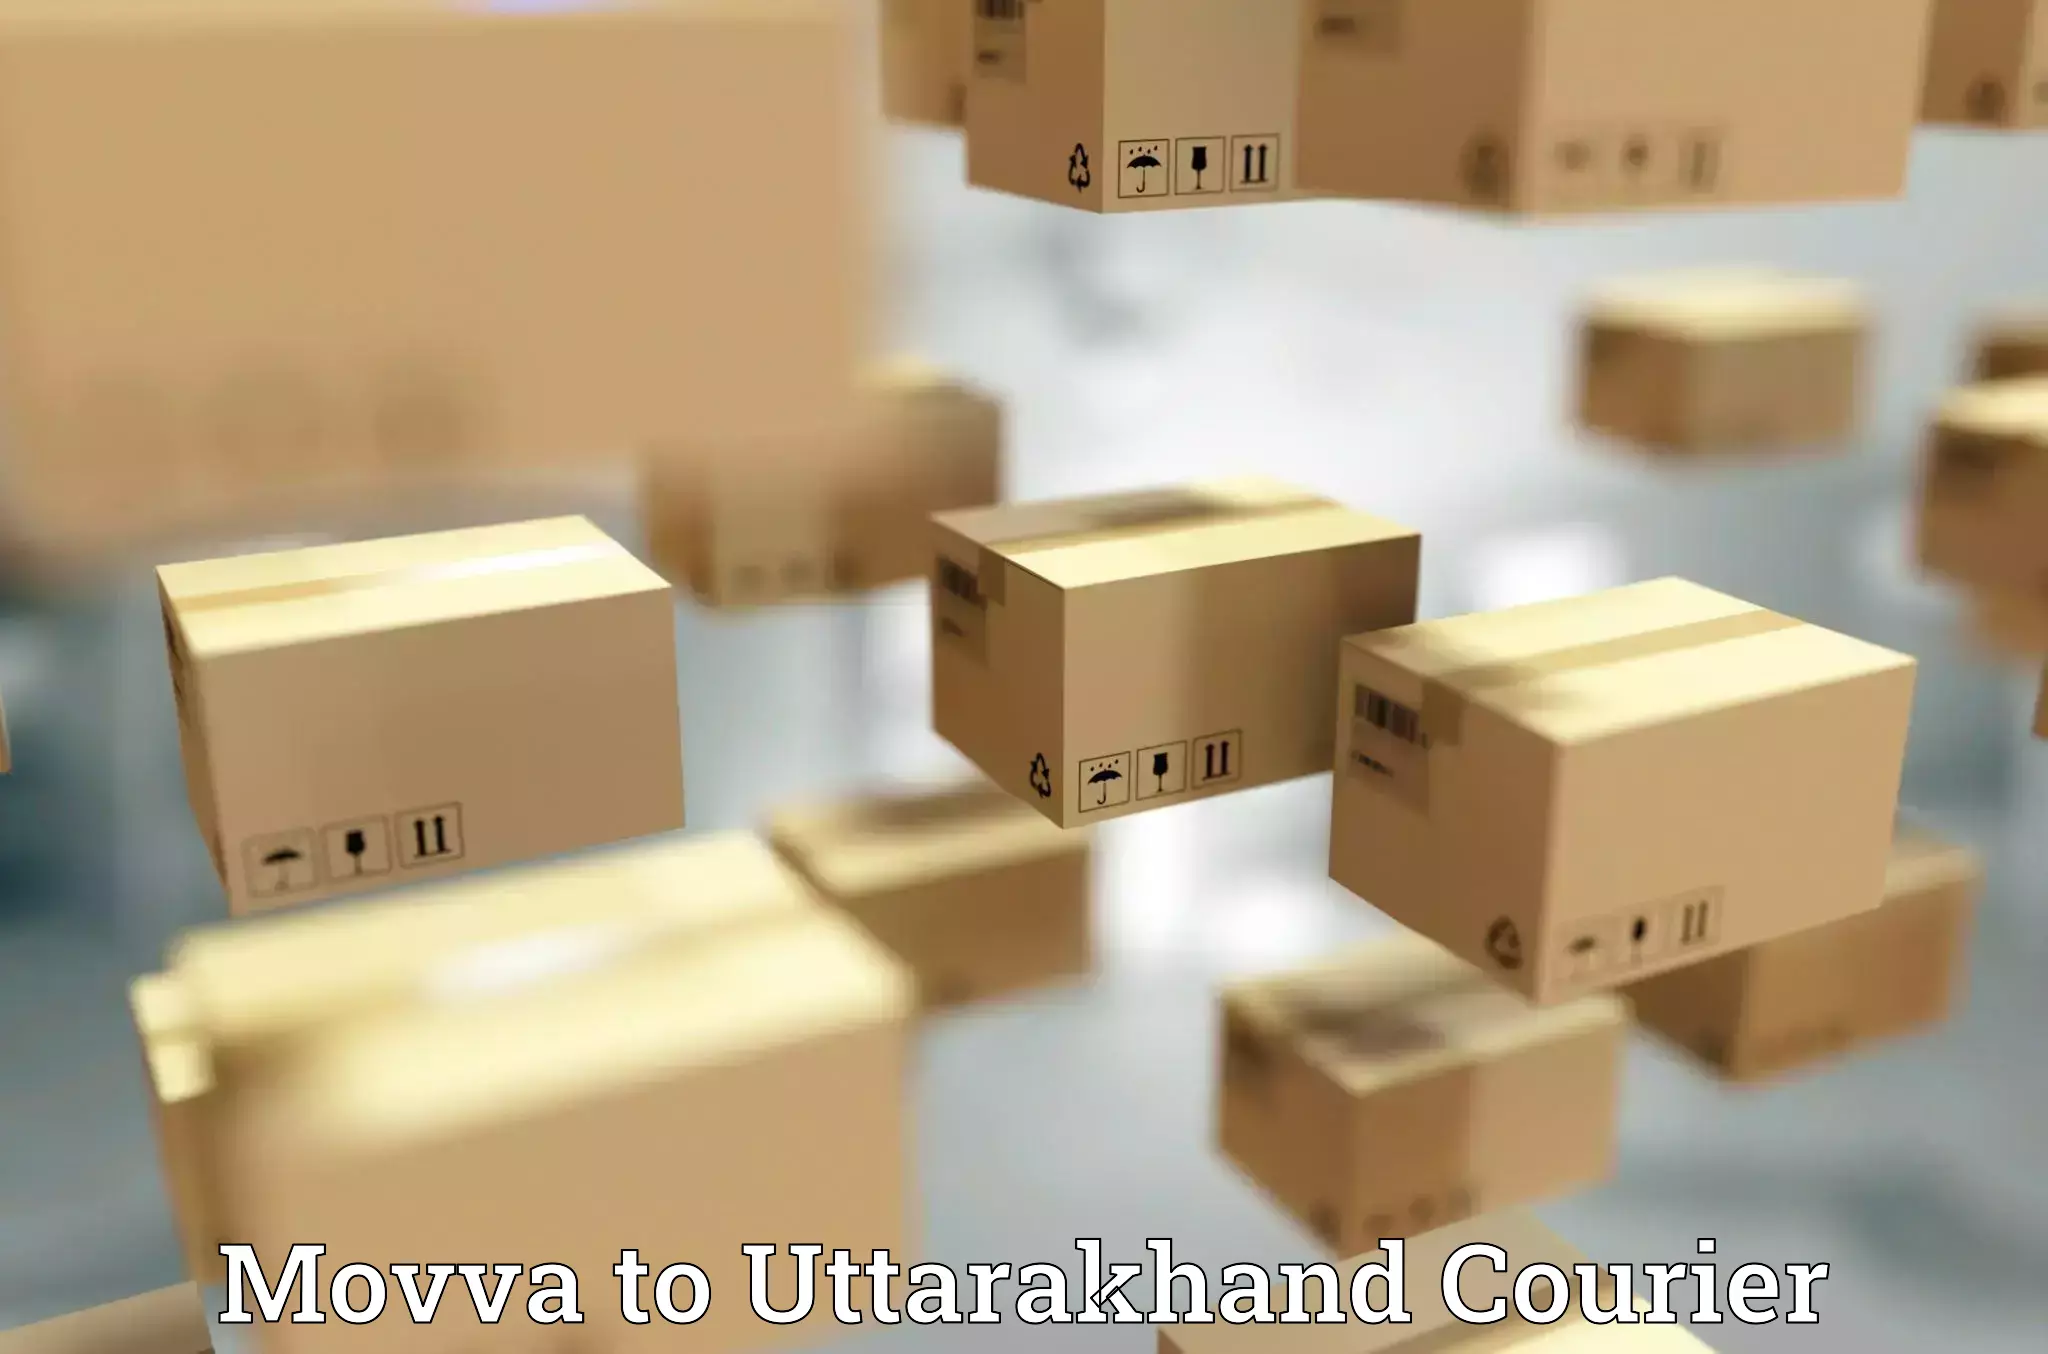 User-friendly courier app Movva to Uttarakhand